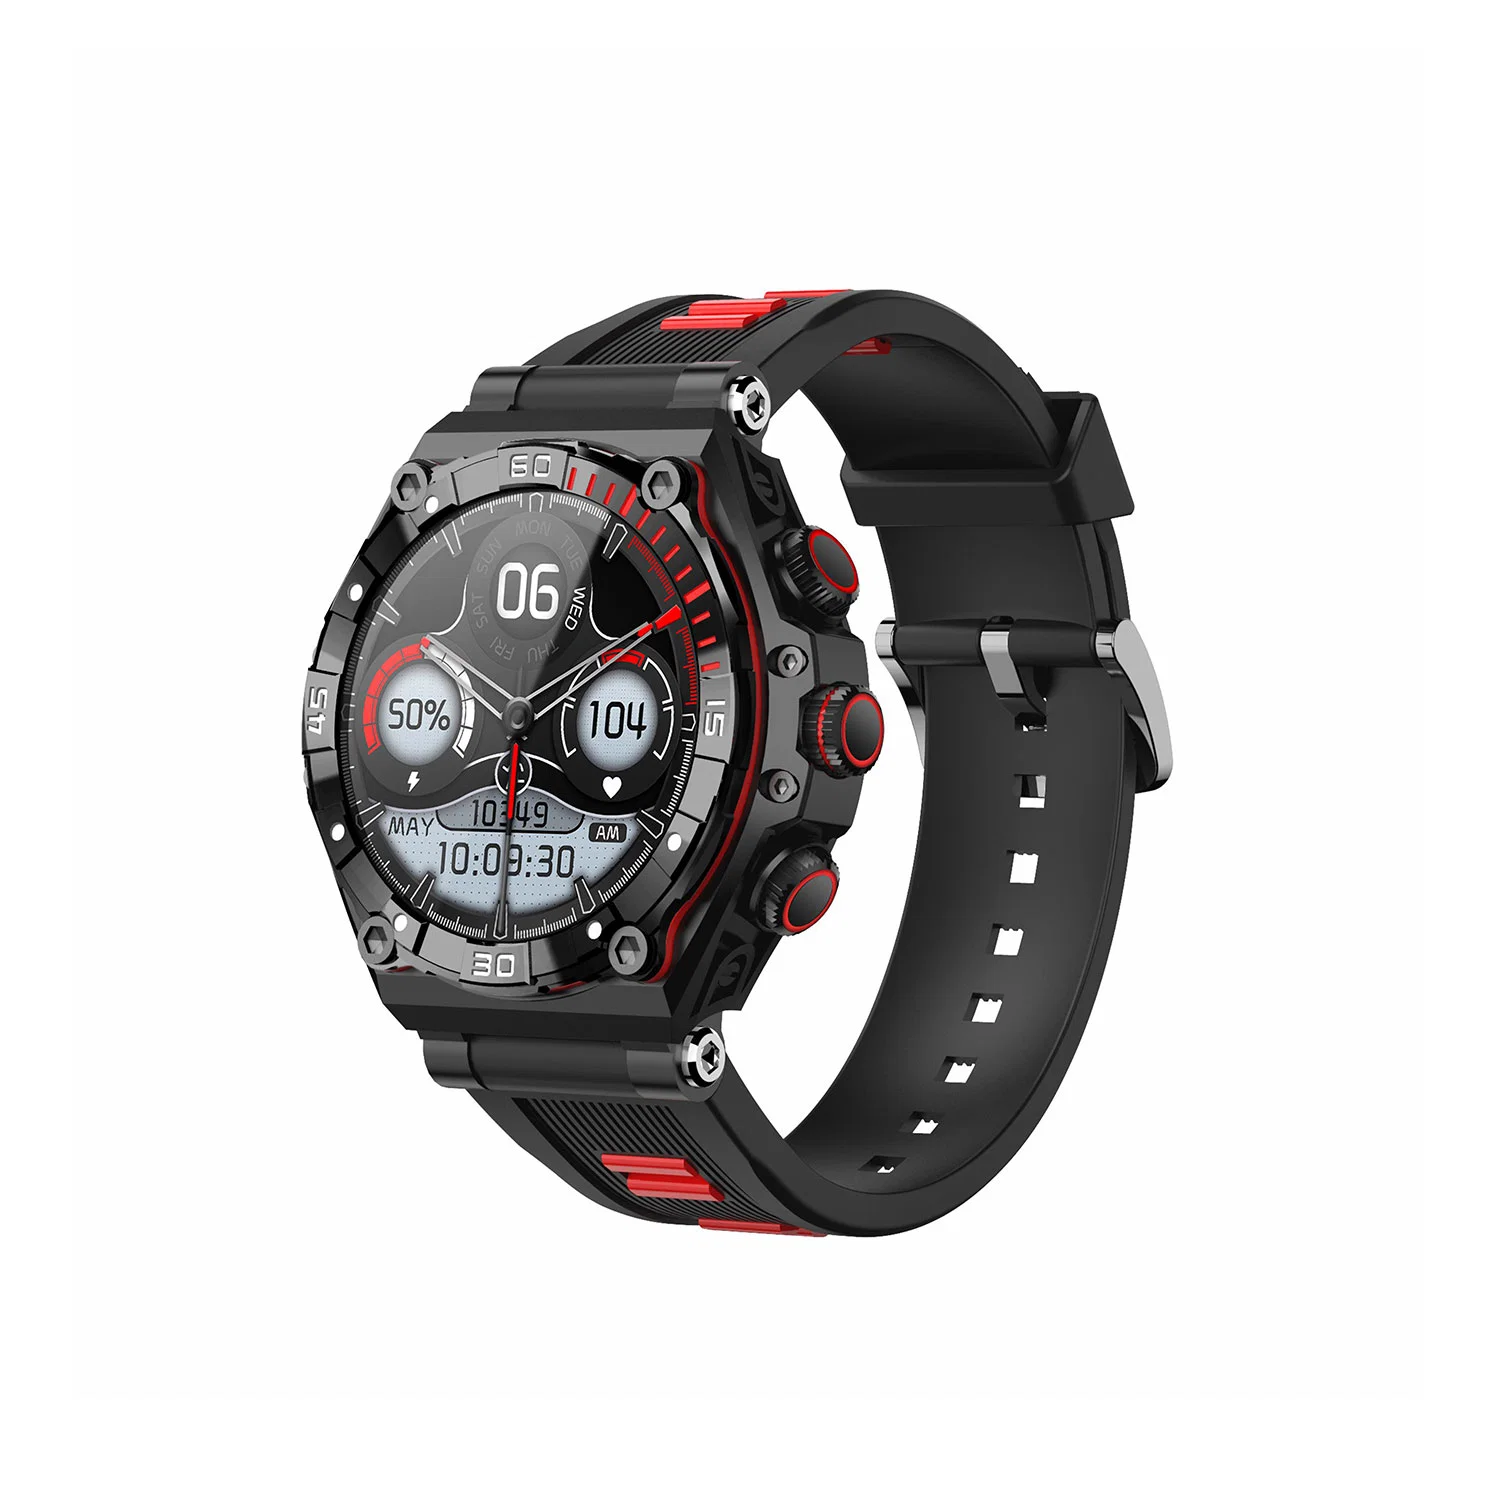 Gran pantalla AMOLED de 1,43 Waterproof Sport Smart relojes con batería de larga duración de 700 mAh